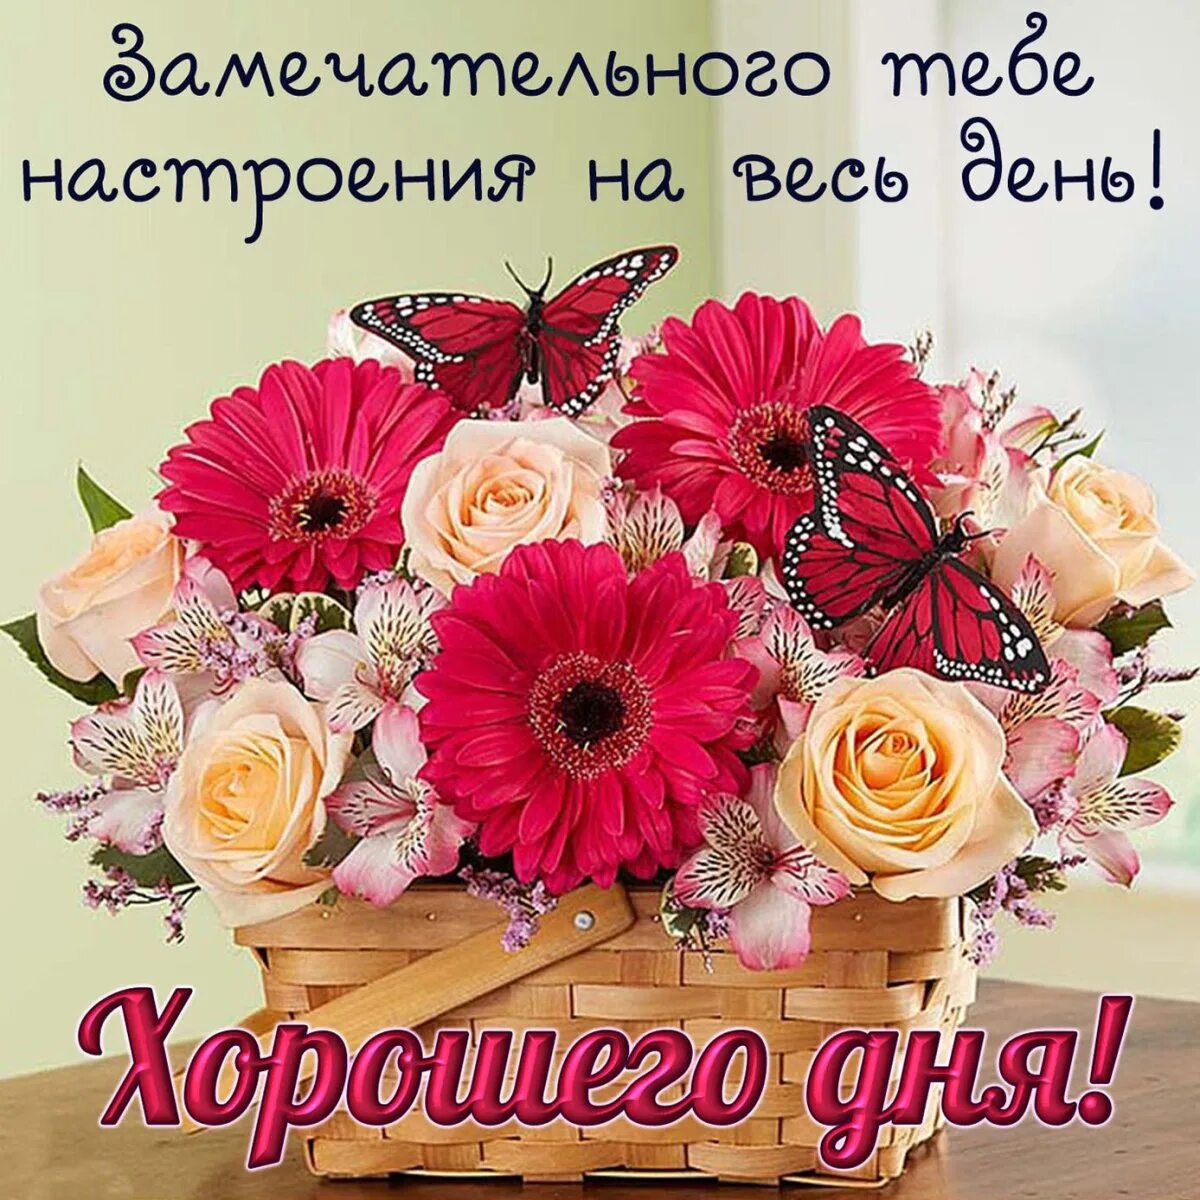 Пусть тебе в жизни все удается. Хорошего дня и отличного настроения. Цветы с пожеланиями хорошего дня. Поздравления с хорошим настроением. Поздравления с добрым днем и с хорошим настроением.